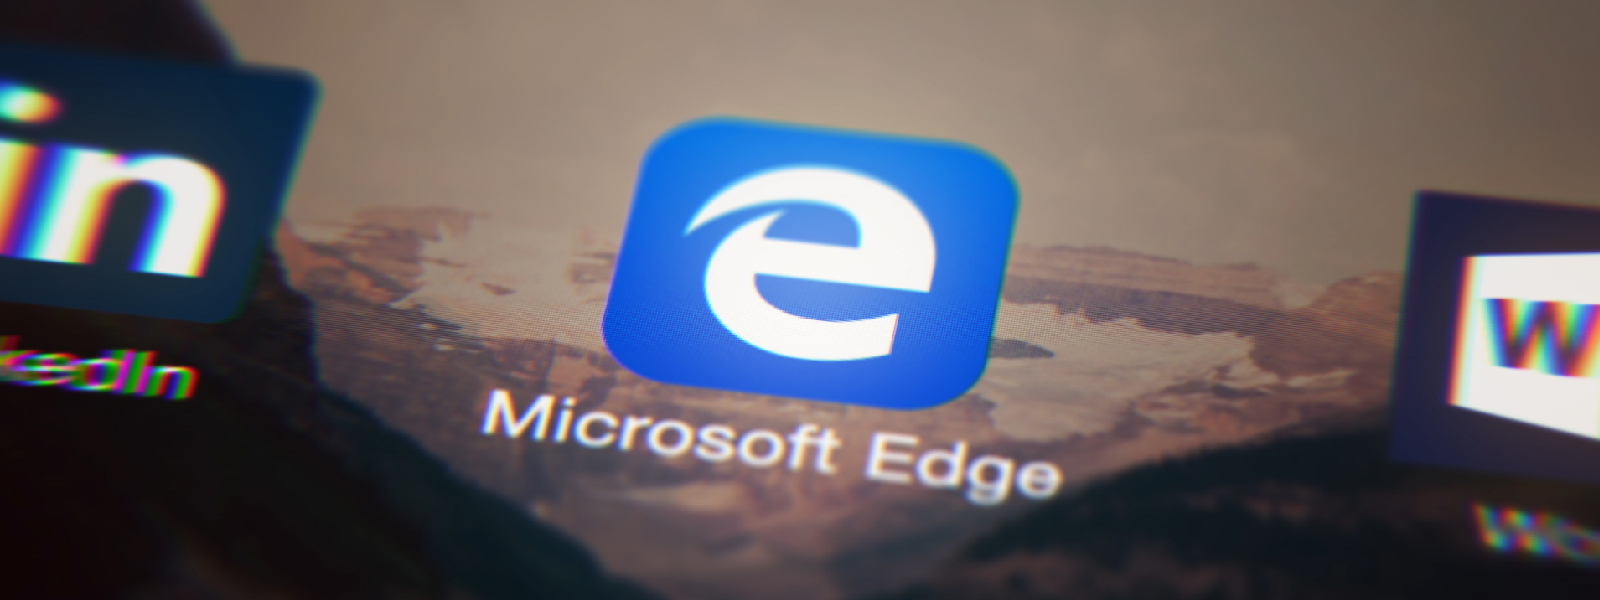 Oversæt øjeblikkeligt sider i ny Microsoft Edge-opdatering til iOS